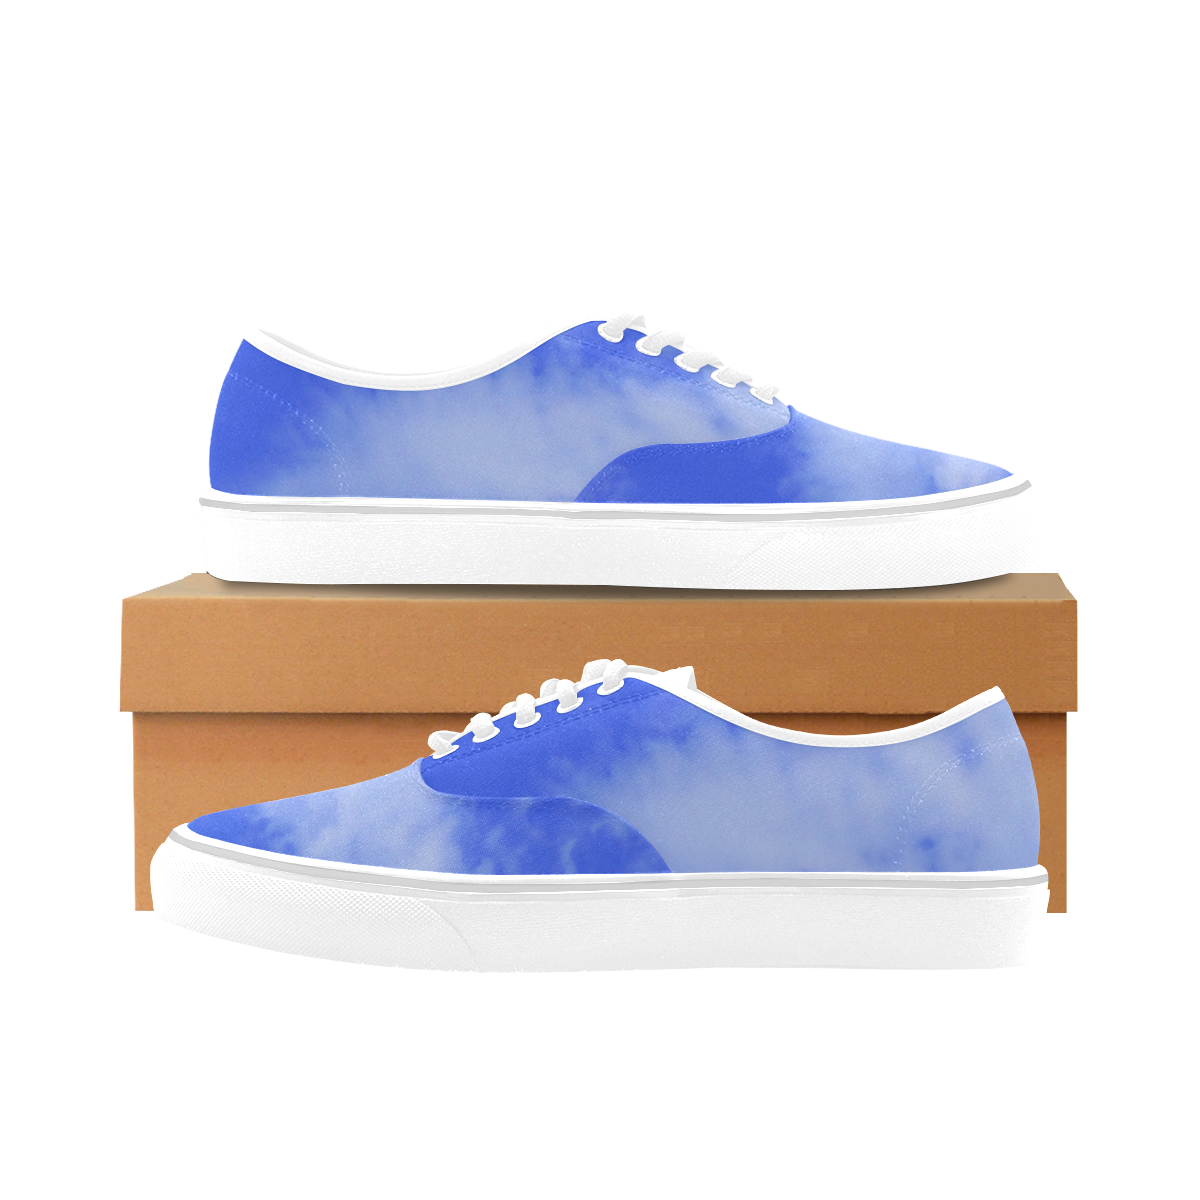 Blue Clouds white sole Classic Men's Canvas Low Top Shoes (Model E001-4)